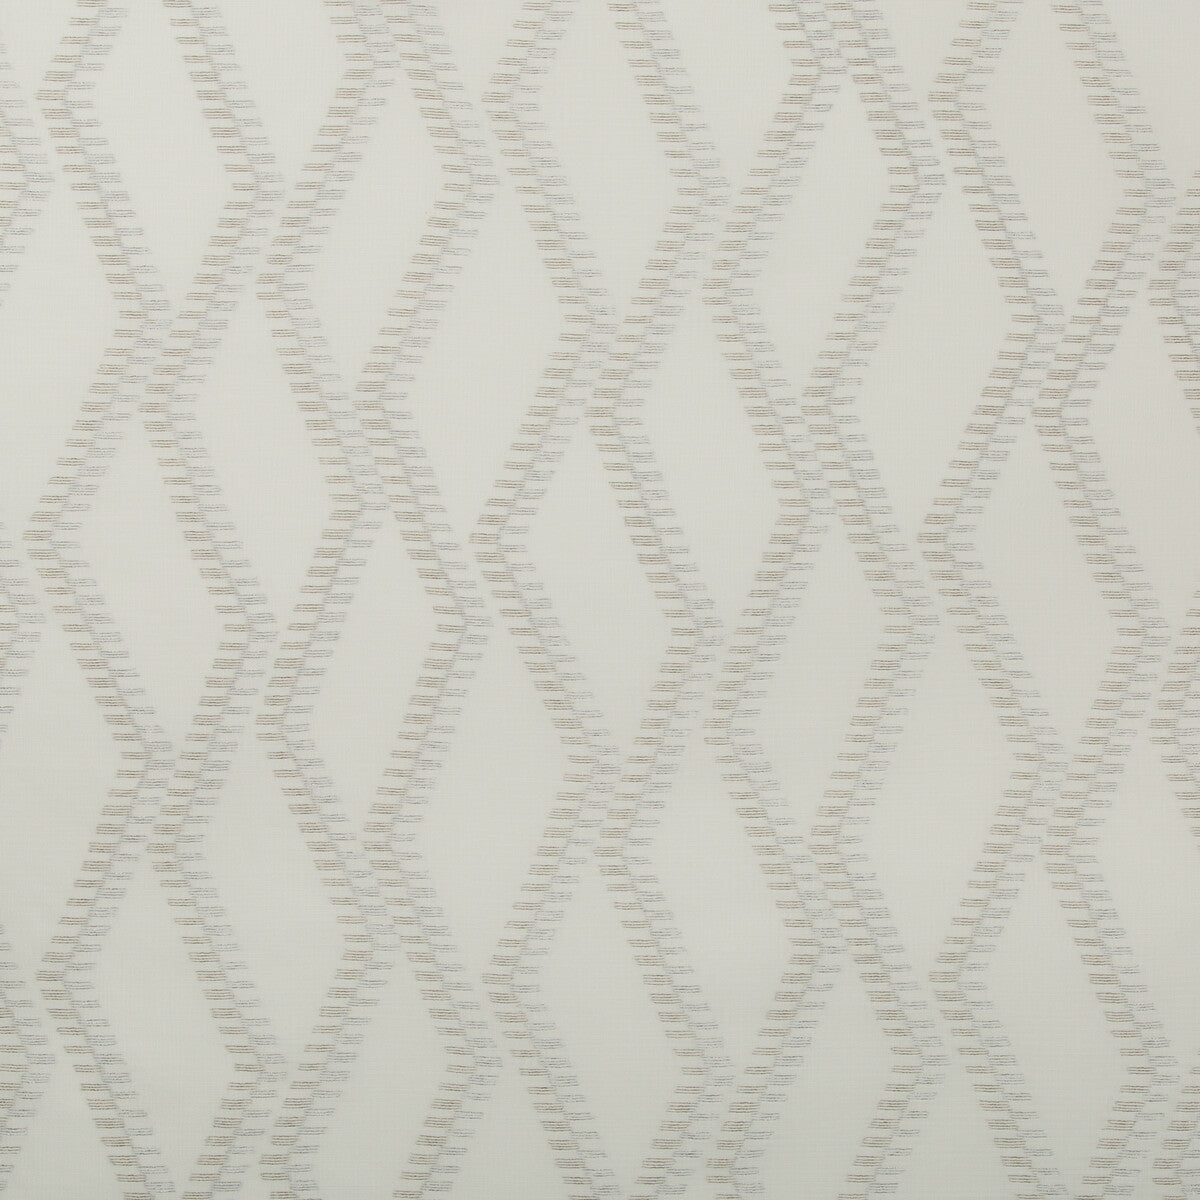 Kravet Basics fabric in 4695-106 color - pattern 4695.106.0 - by Kravet Basics